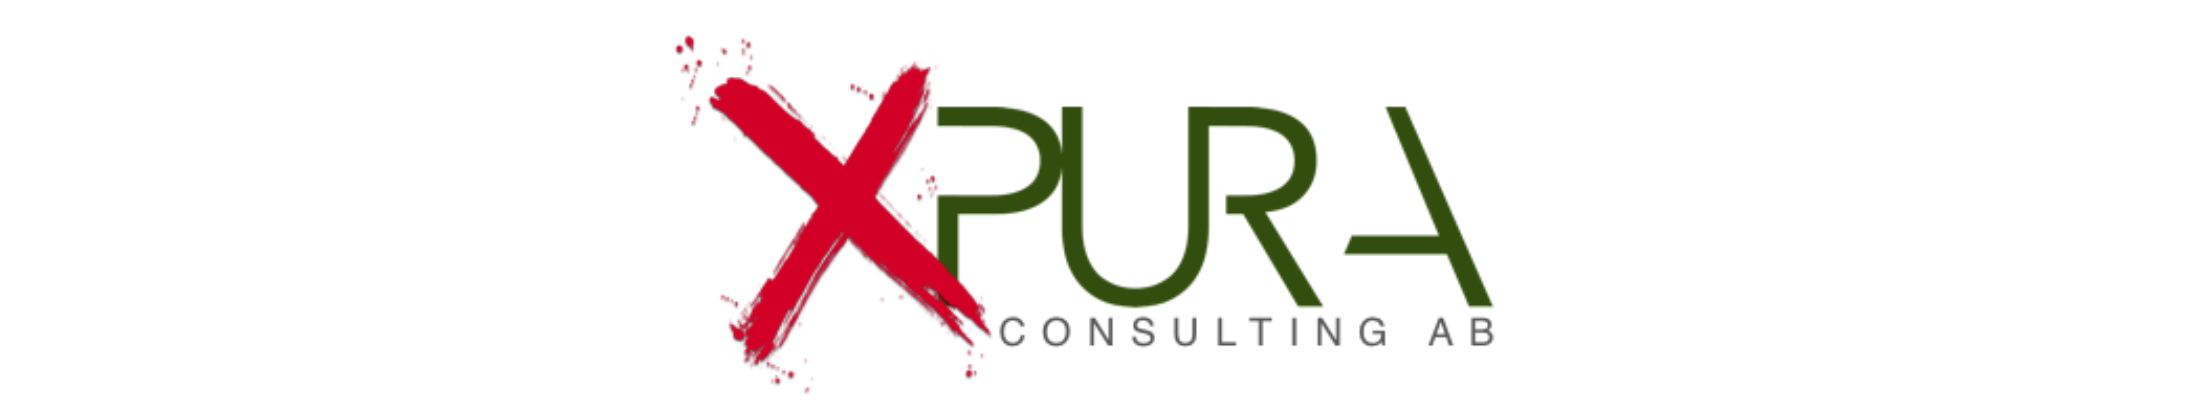 Xpura Consulting AB